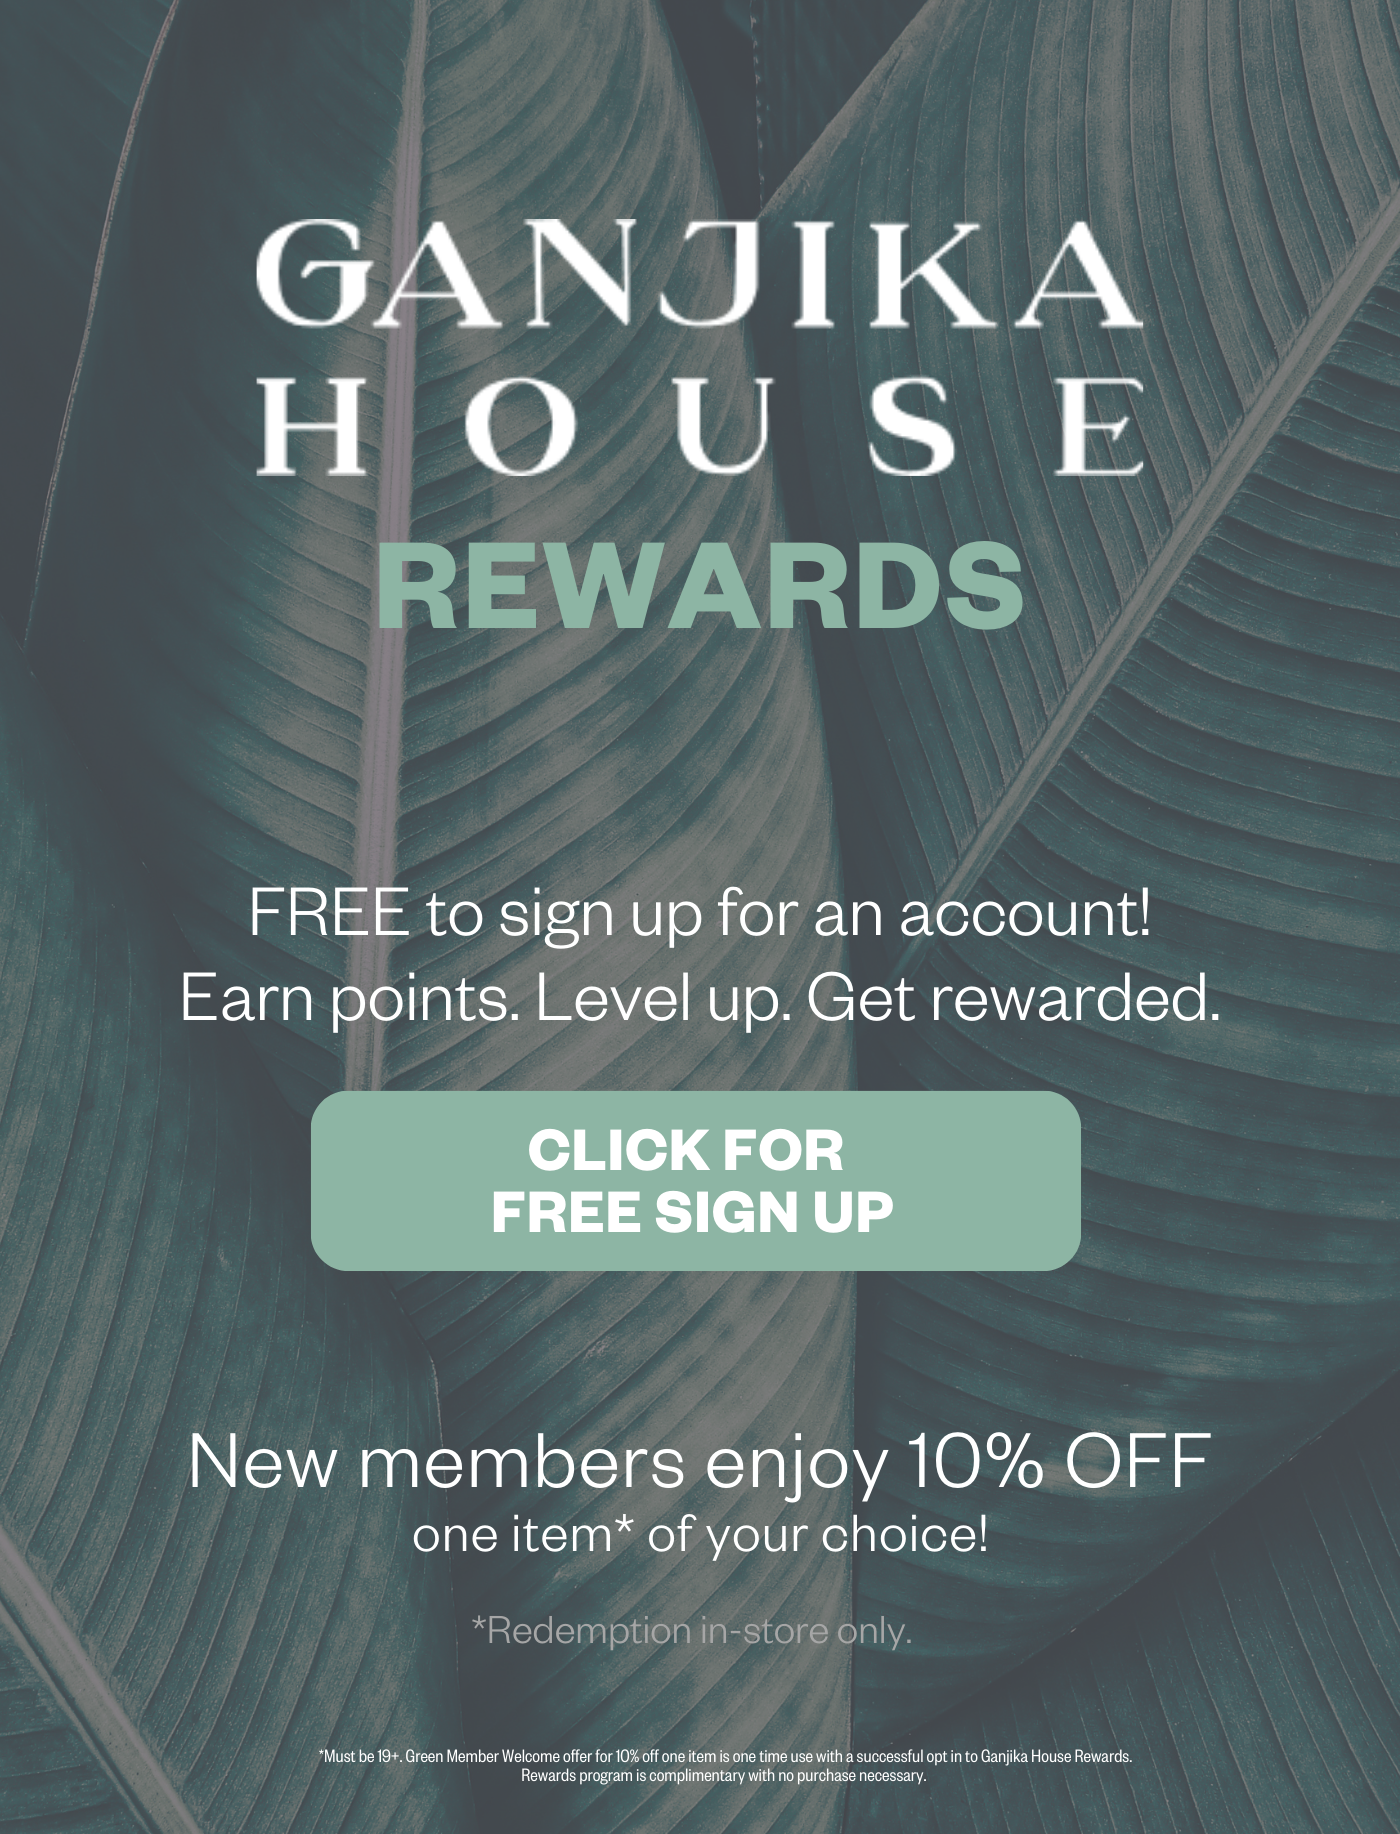 Ganjika House Rewards